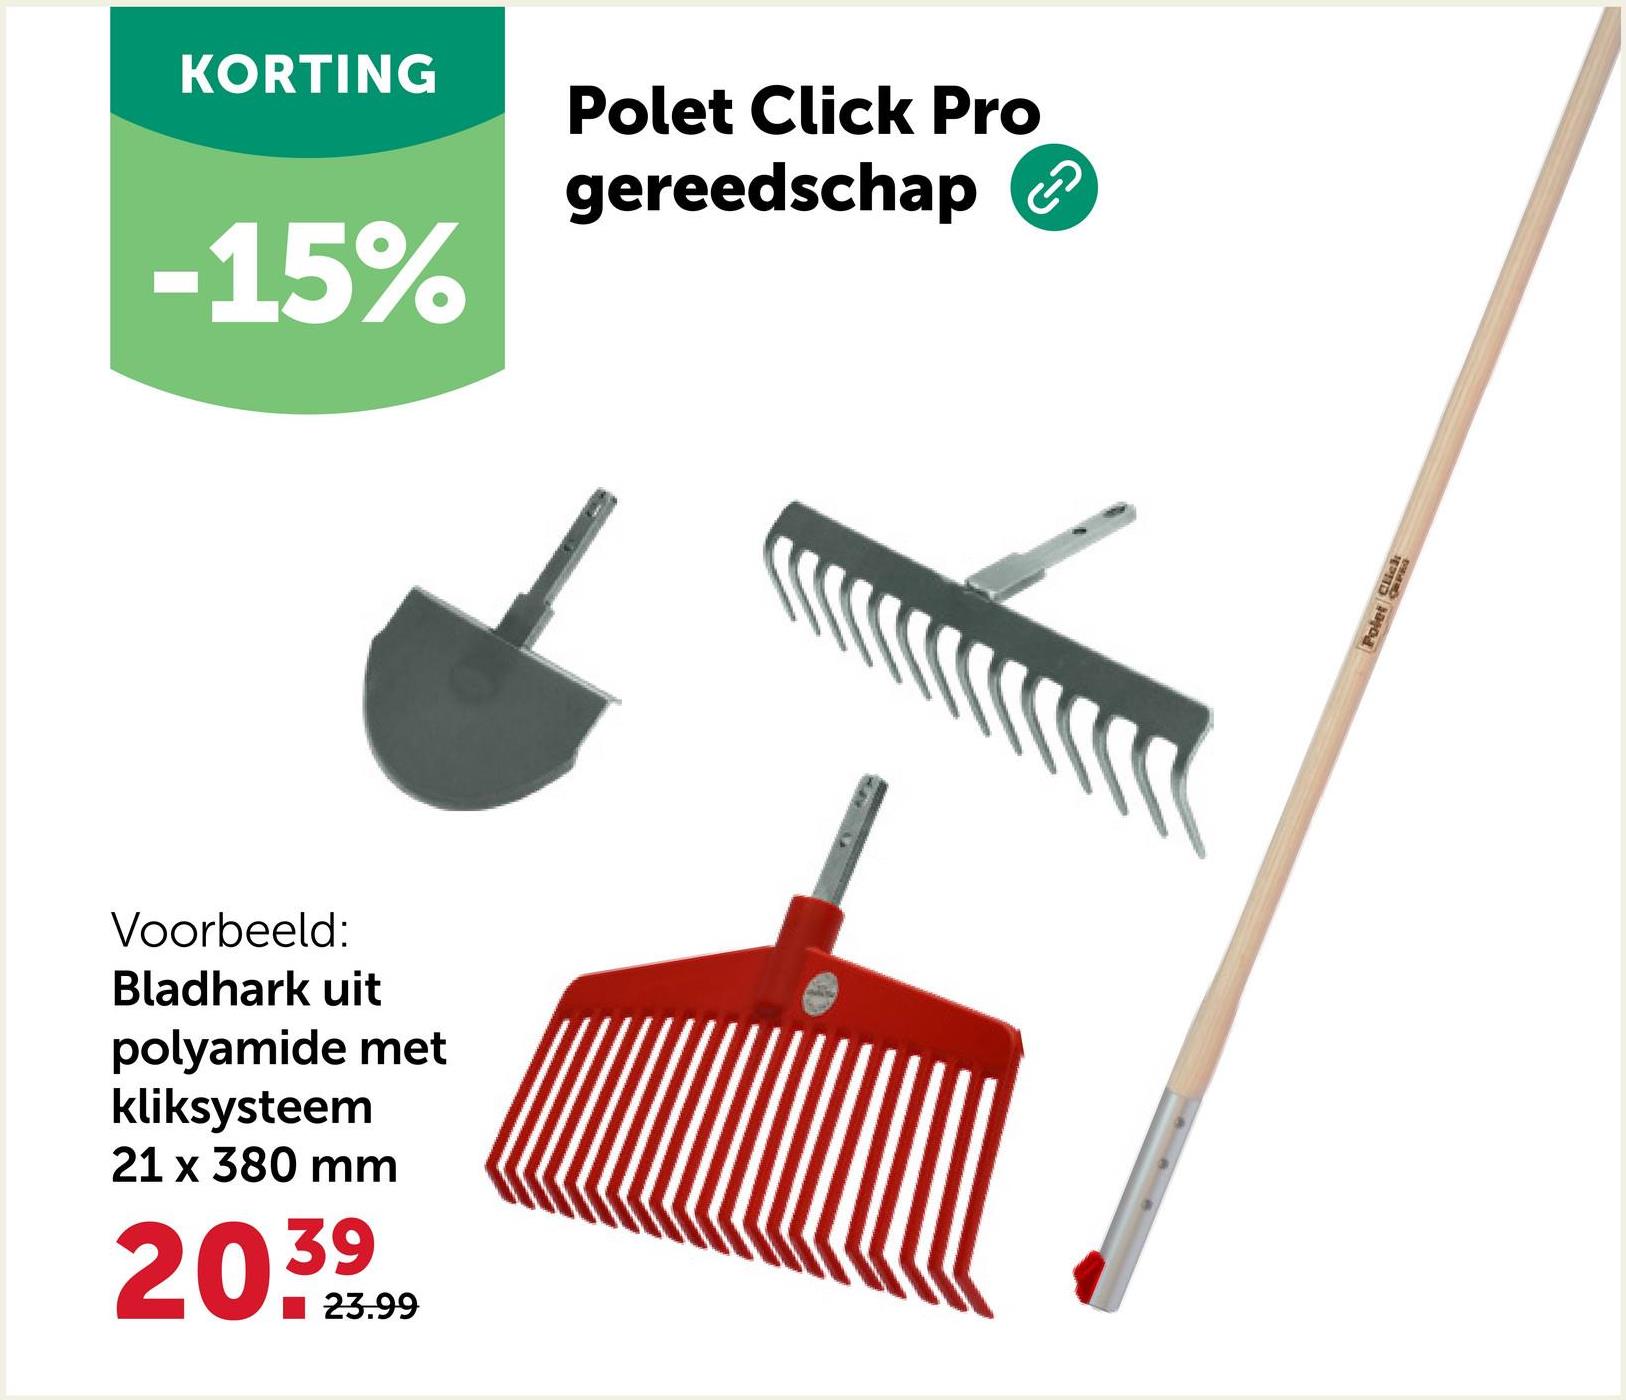 KORTING
Polet Click Pro
gereedschap
-15%
Voorbeeld:
Bladhark uit
polyamide met
kliksysteem
21 x 380 mm
20.39
23.99
Polet Click